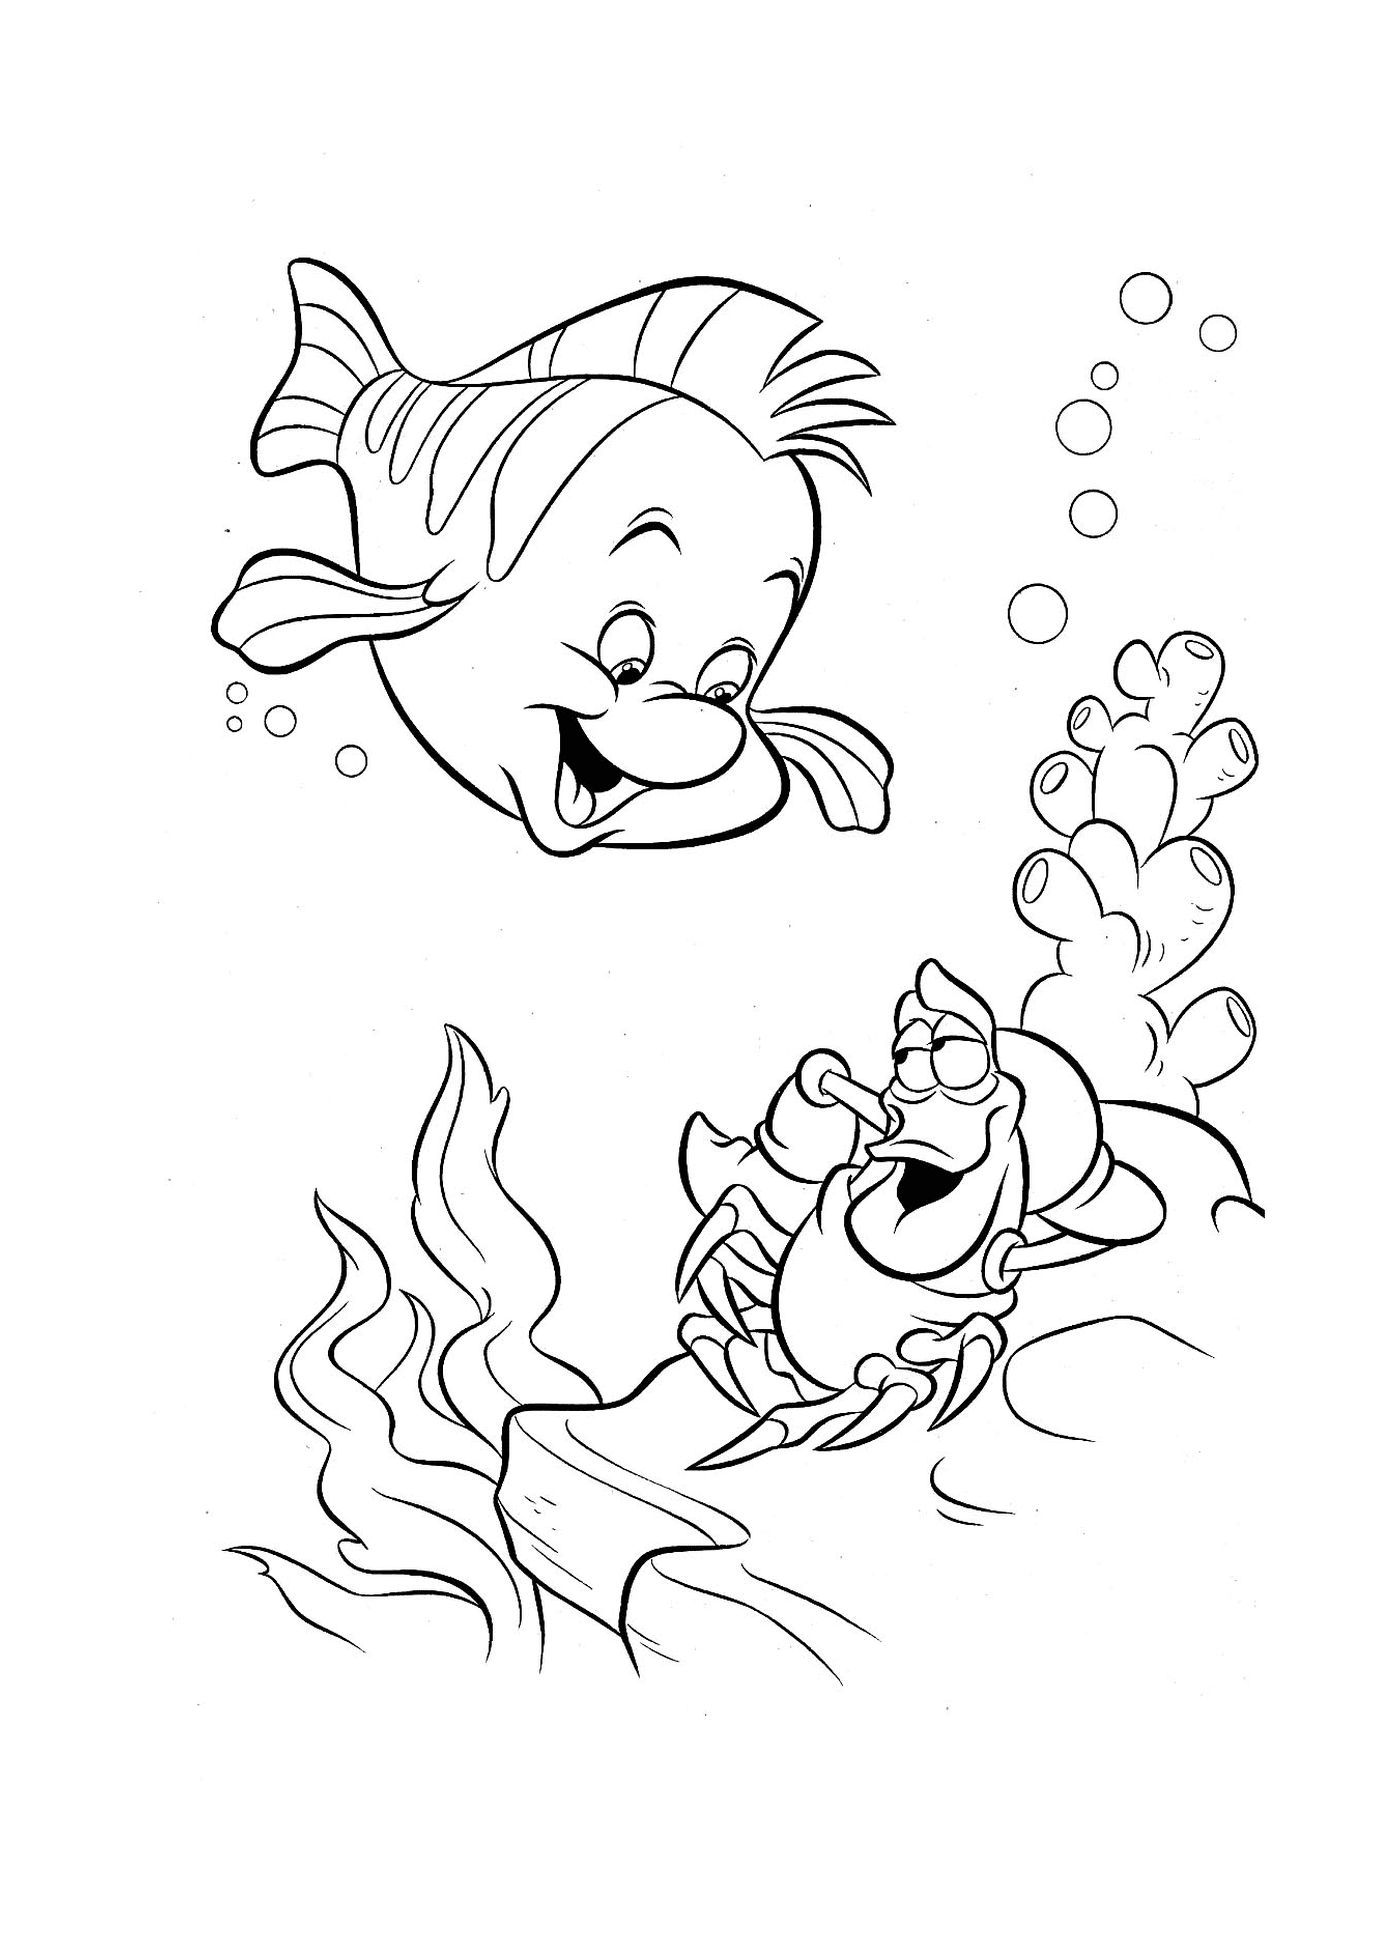   Un poisson et un crabe nagent ensemble 